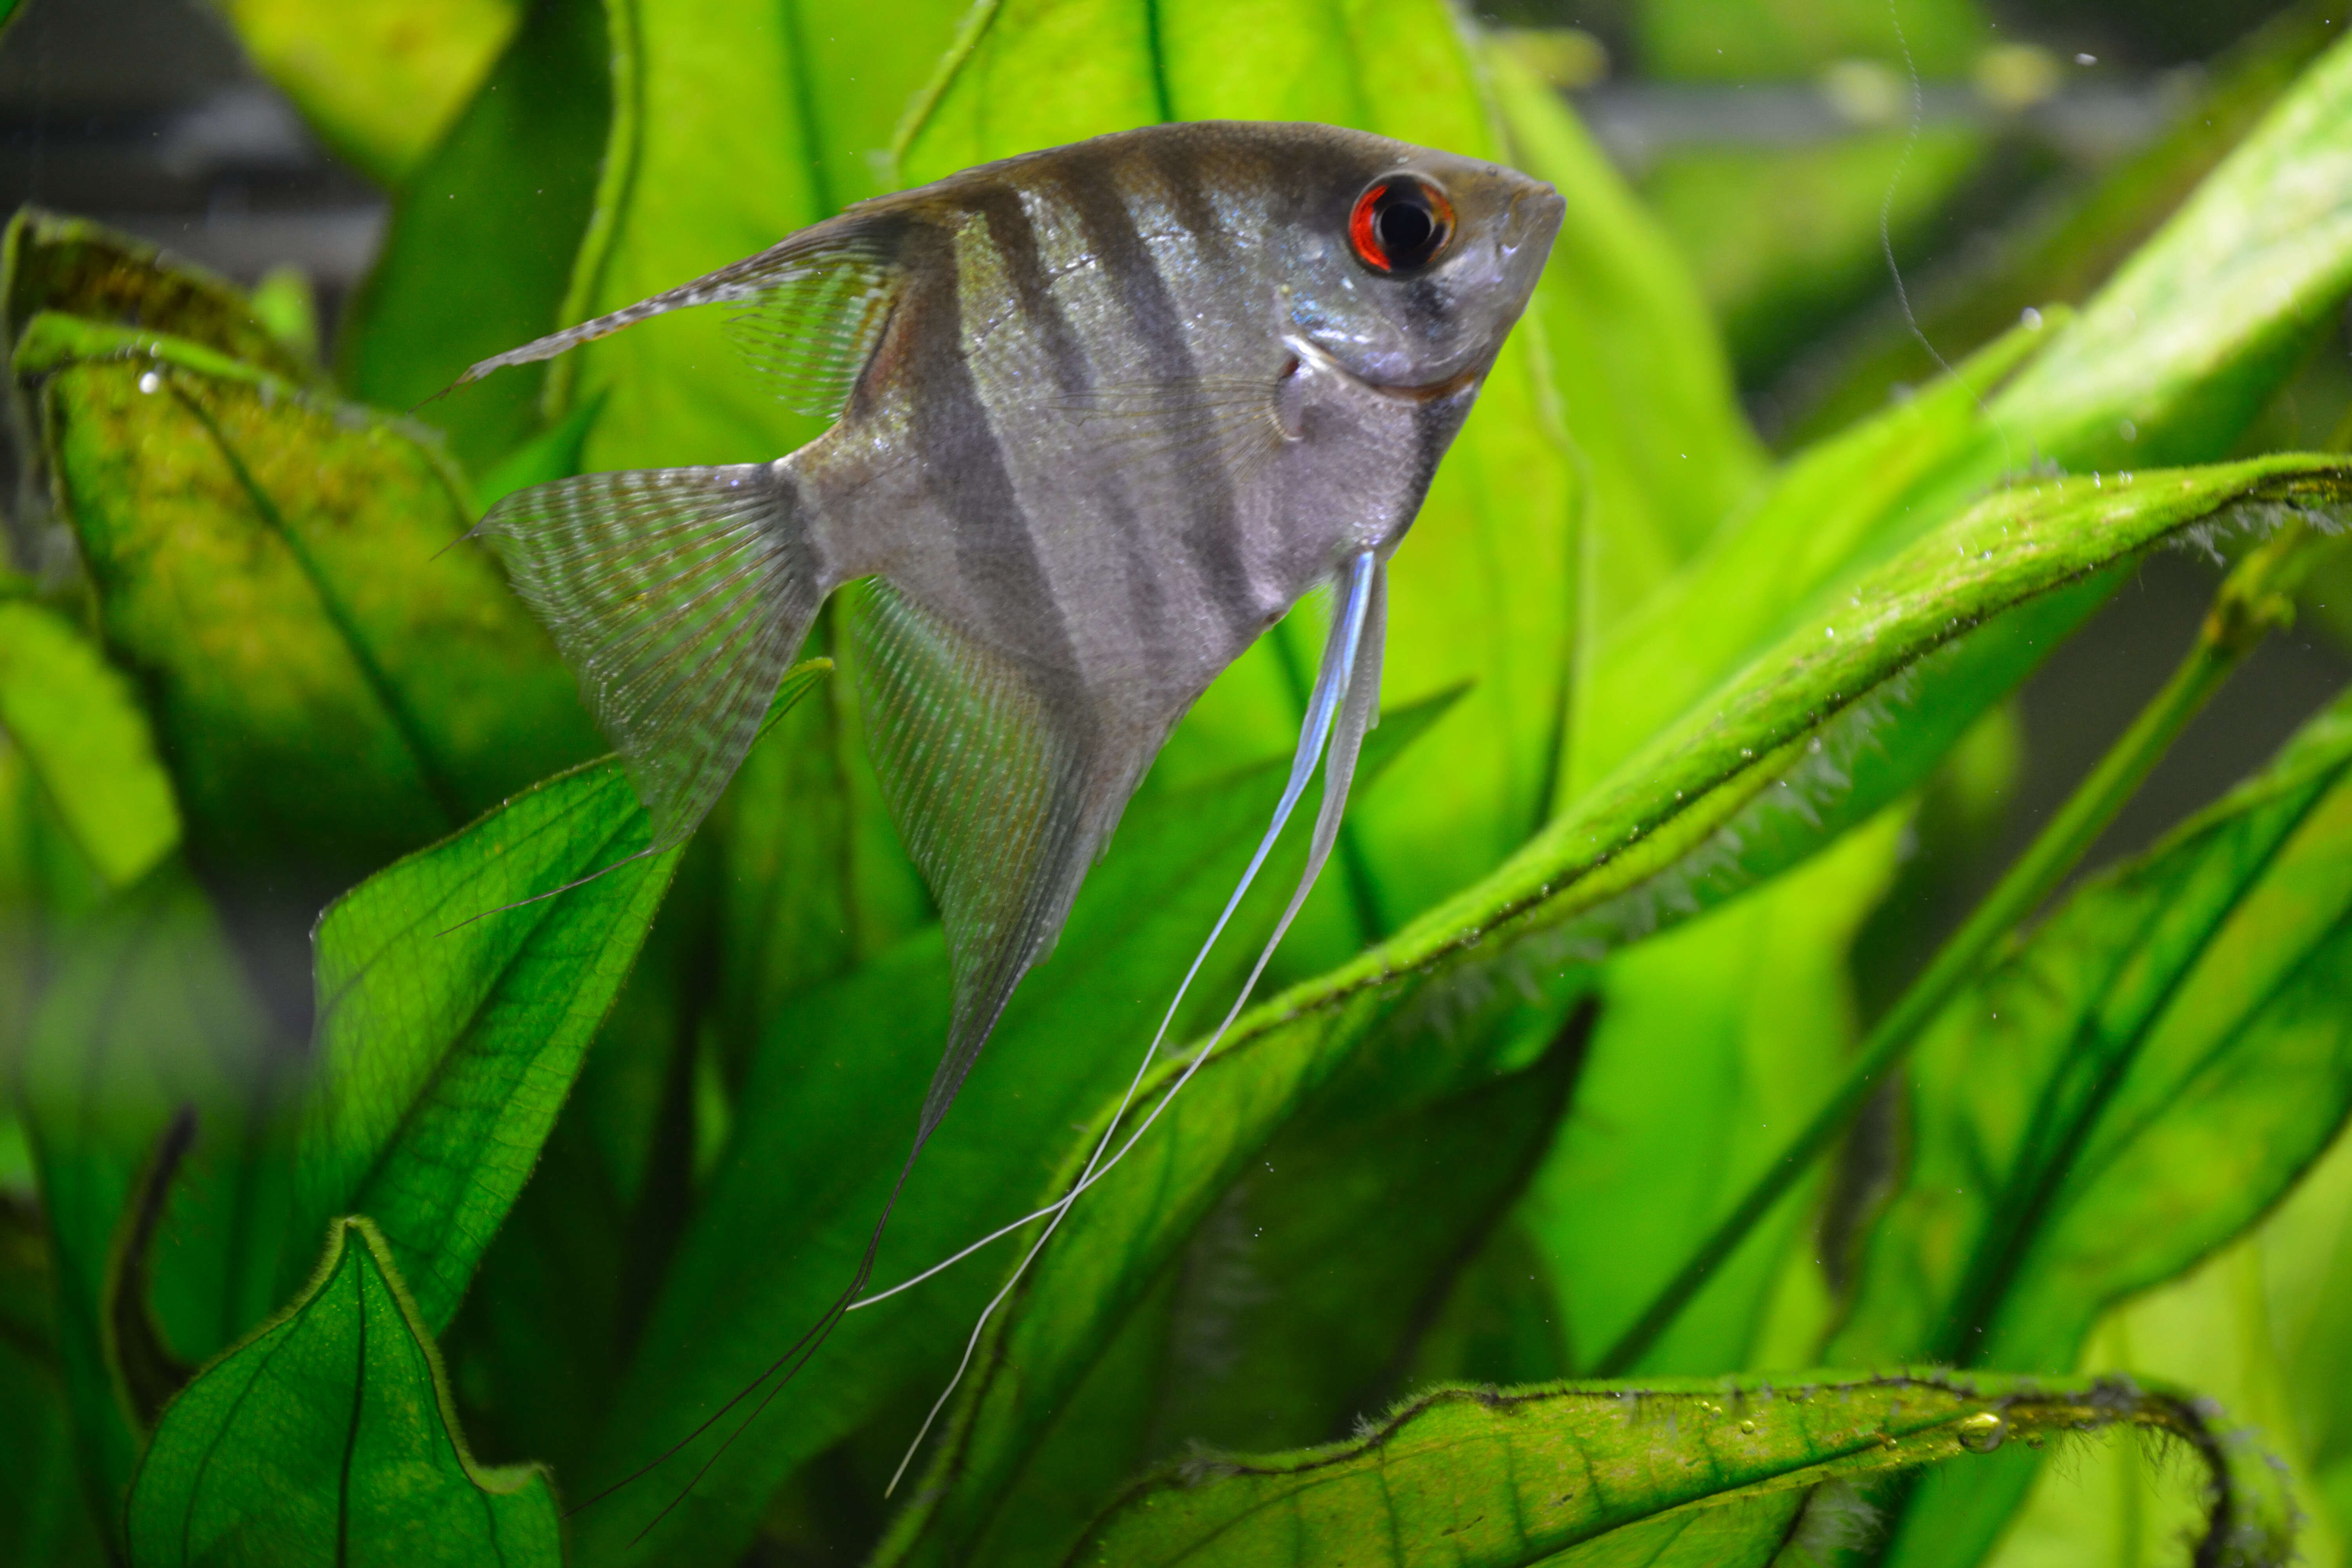 Image of freshwater angelfish